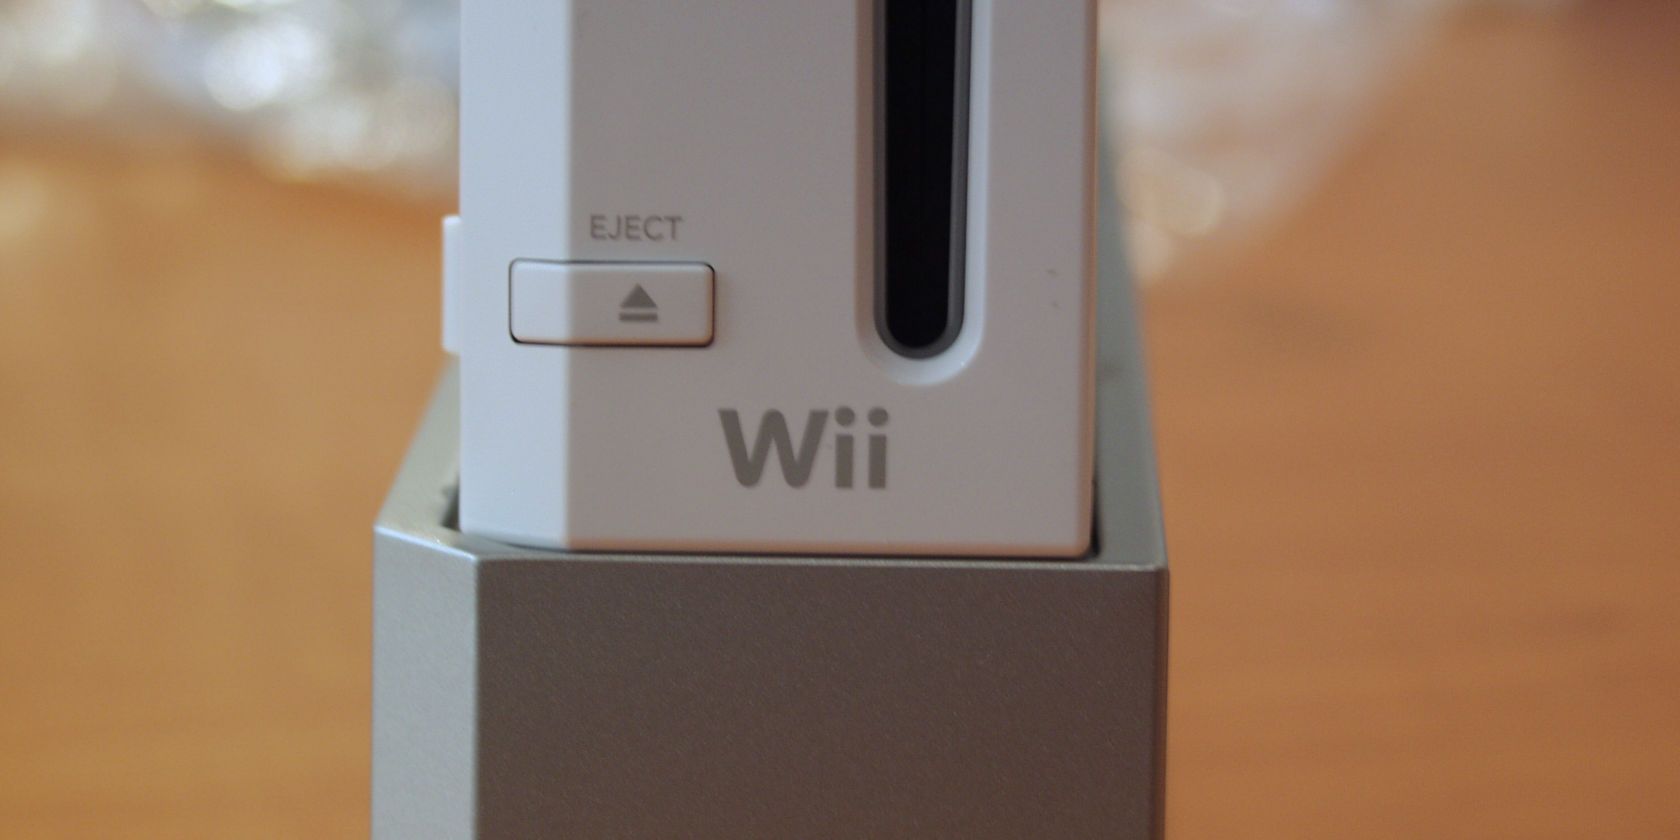 Wii จะไม่เชื่อมต่อกับ WiFi? นี่คือการแก้ไขอย่างง่าย